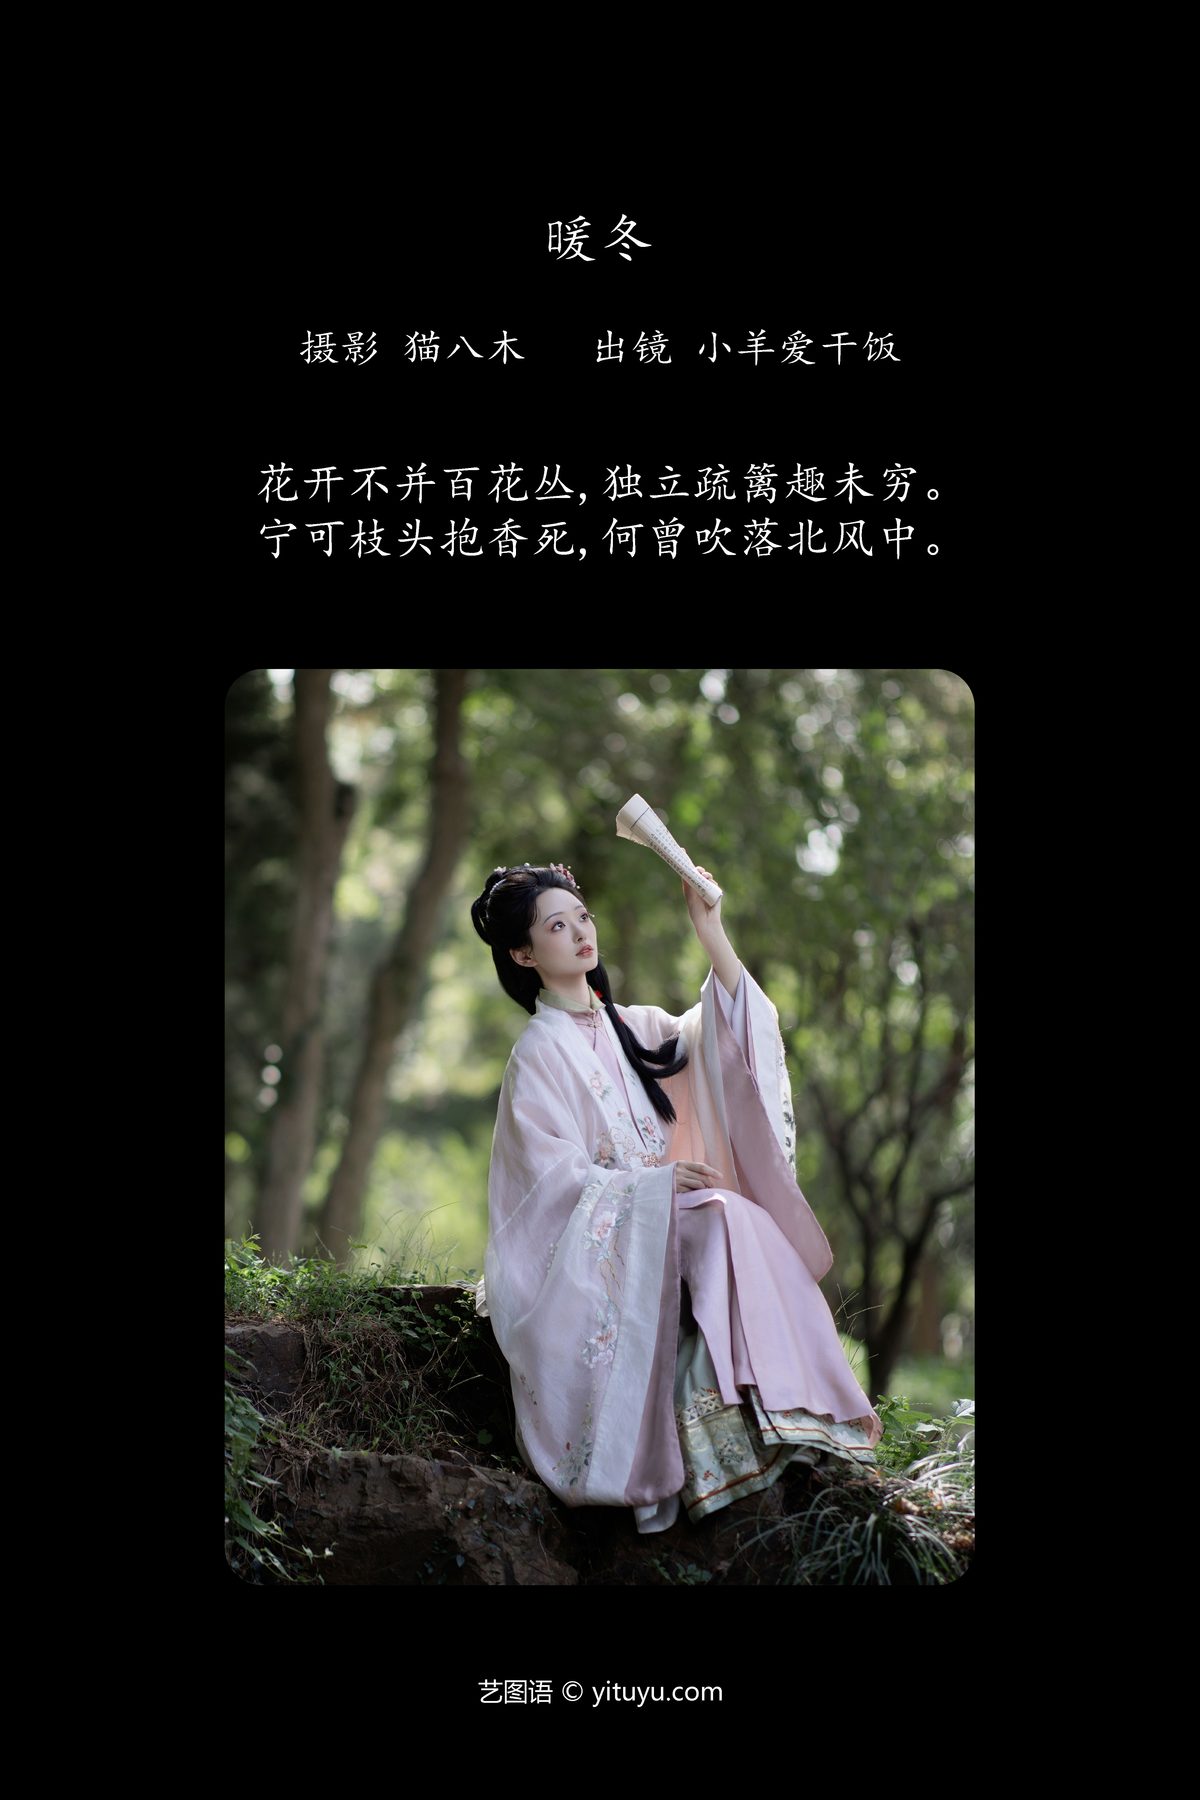 YiTuYu艺图语 Vol 5923 Xiao Yang Ai Gan Fan 0002 6941614787.jpg